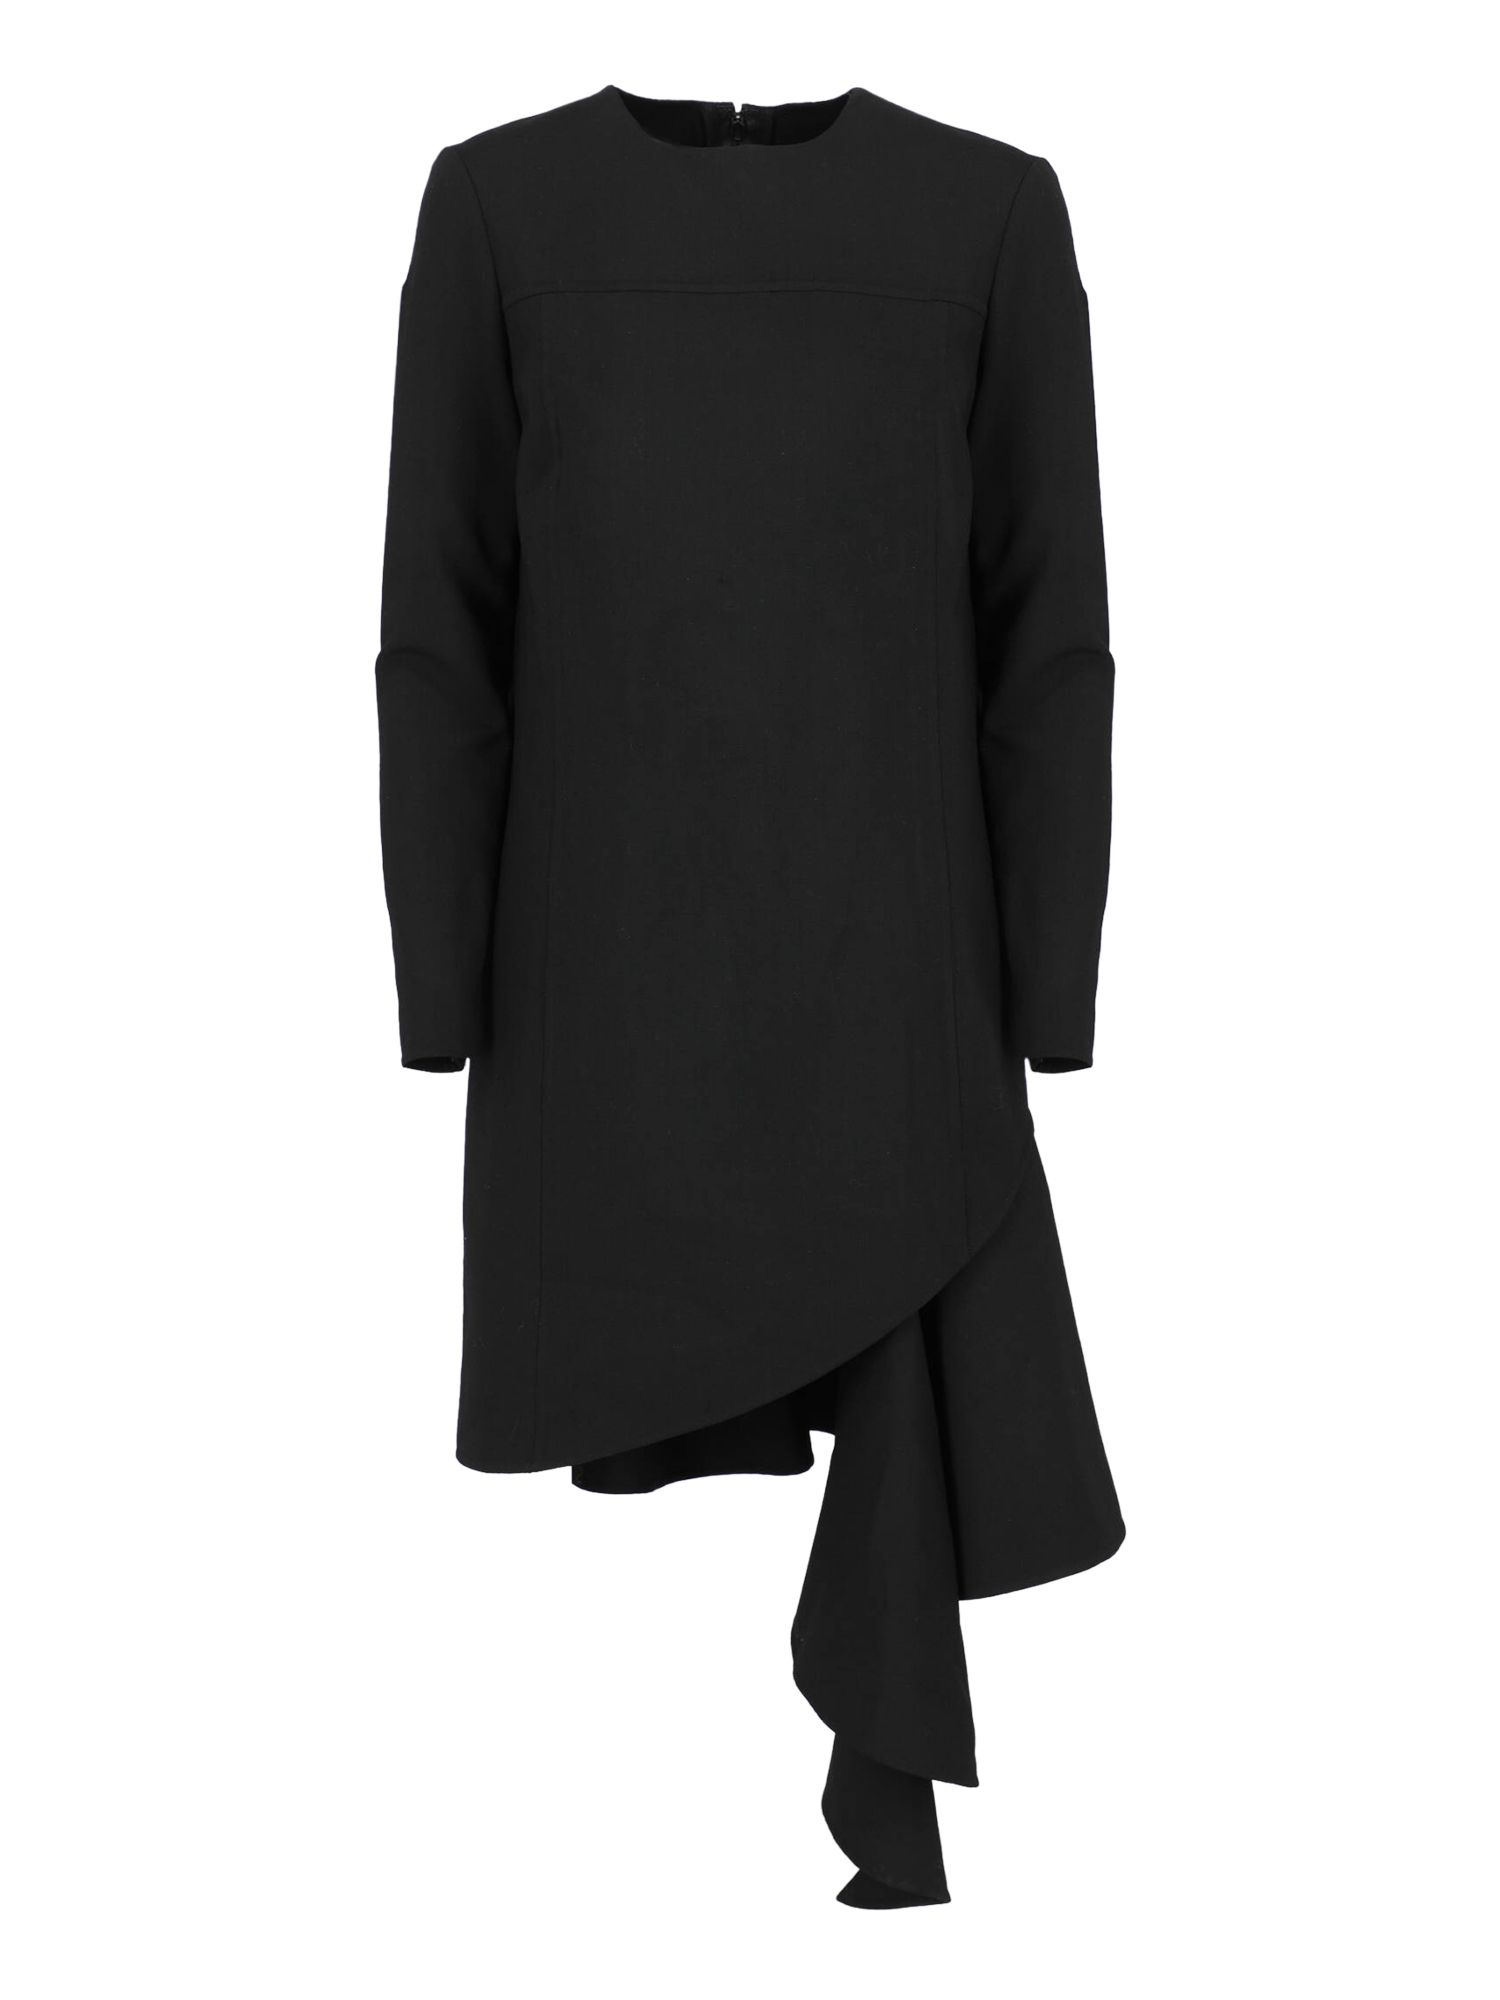 Robes Pour Femme - Oscar De La Renta - En Wool Black - Taille:  -